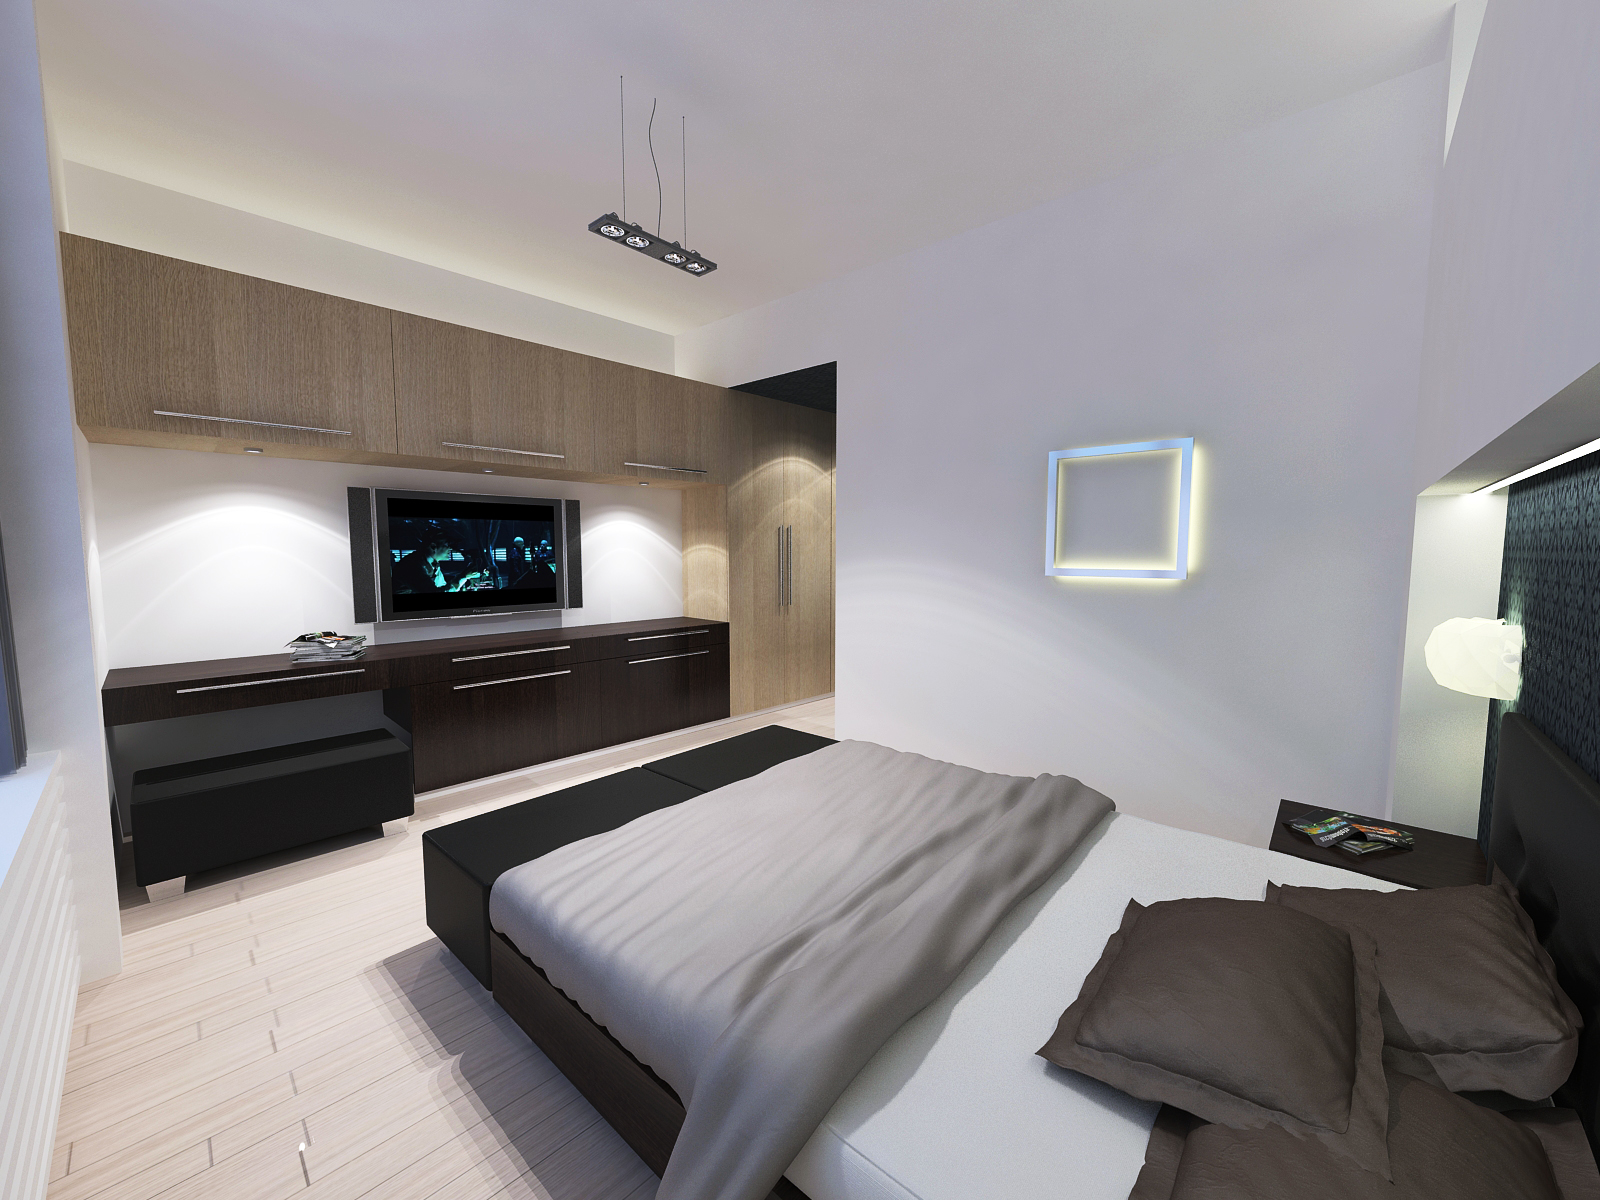 Hálószoba - látványterv / Bedroom - architectural visualization